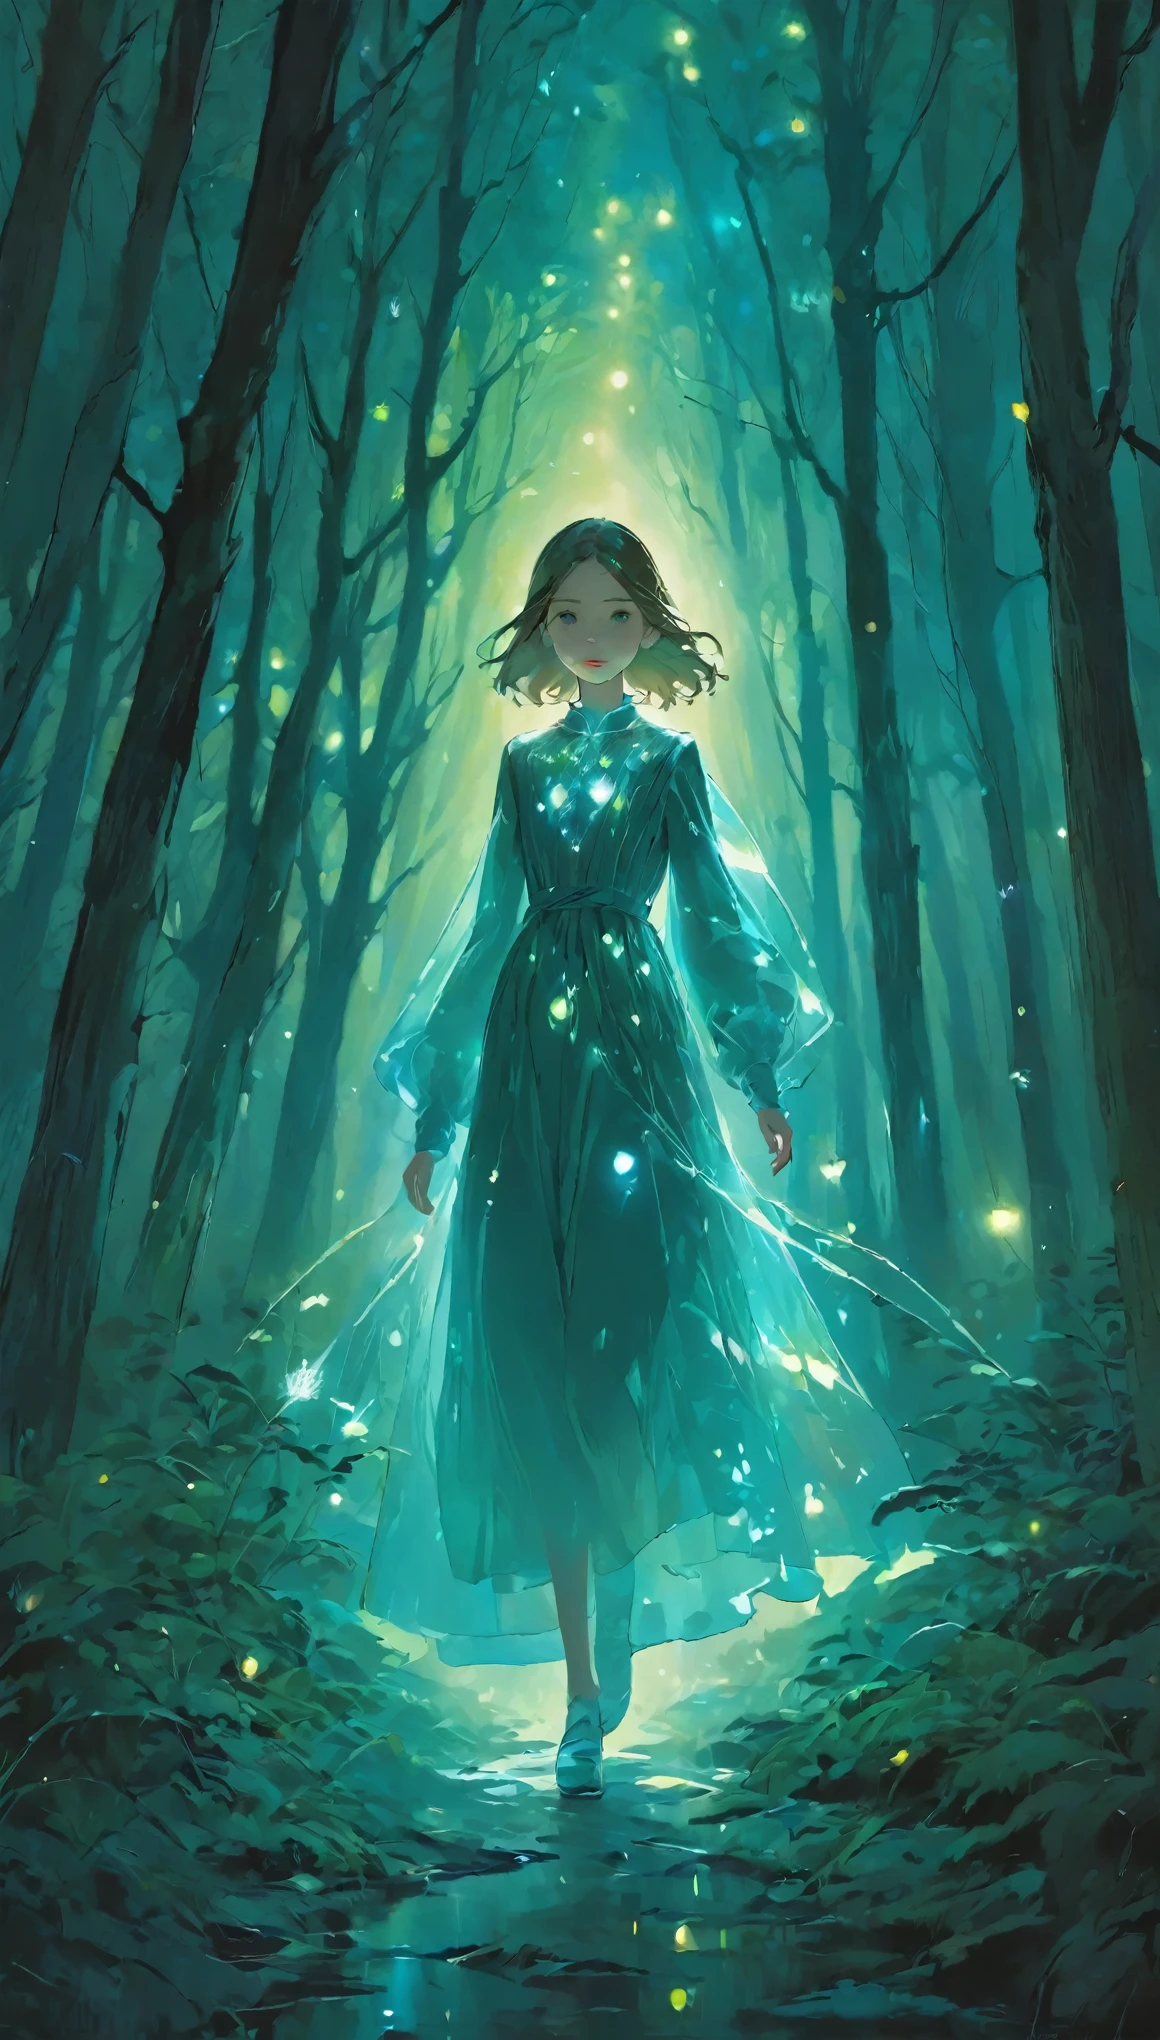 畫像,在這幅奇幻的畫作中,a girl with a translucent glowing 身體 wanders through a mysterious forest,被奇怪的燈光包圍,上_身體,昏暗的背景、無機背景、點亮